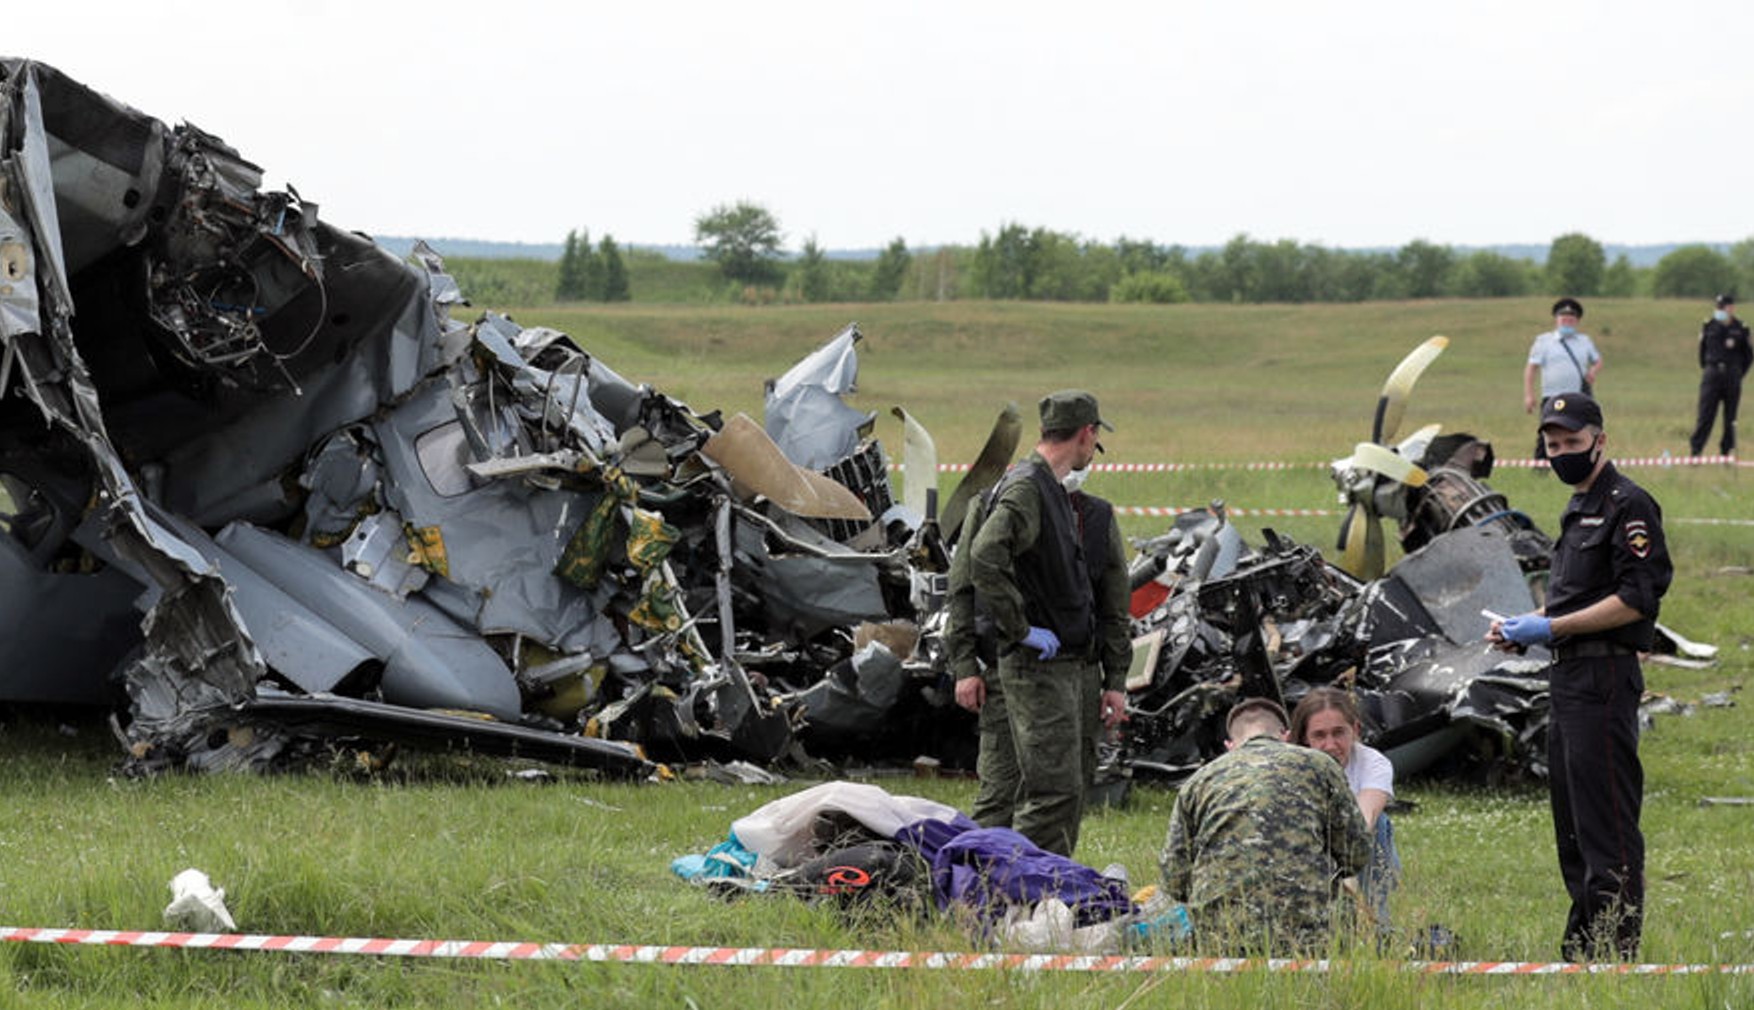 Чотири людини загинули в результаті аварії літака в Кемеровській області. Спочатку повідомили про дев'ять загиблих